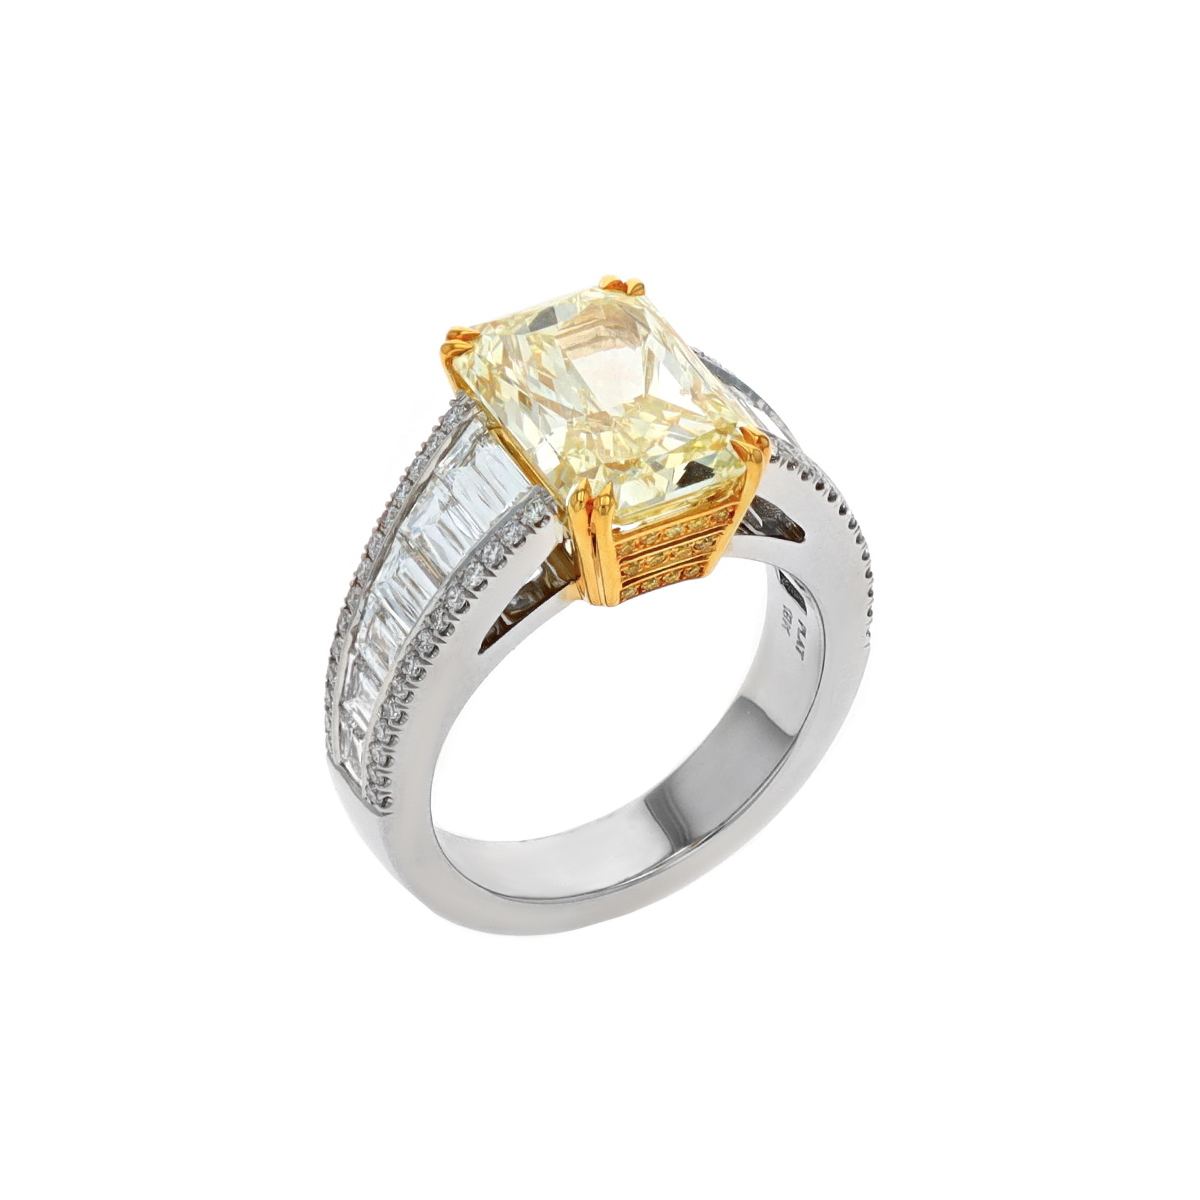 Two-Tone 4.58 Carat Rectangular Yellow Diamond Ring